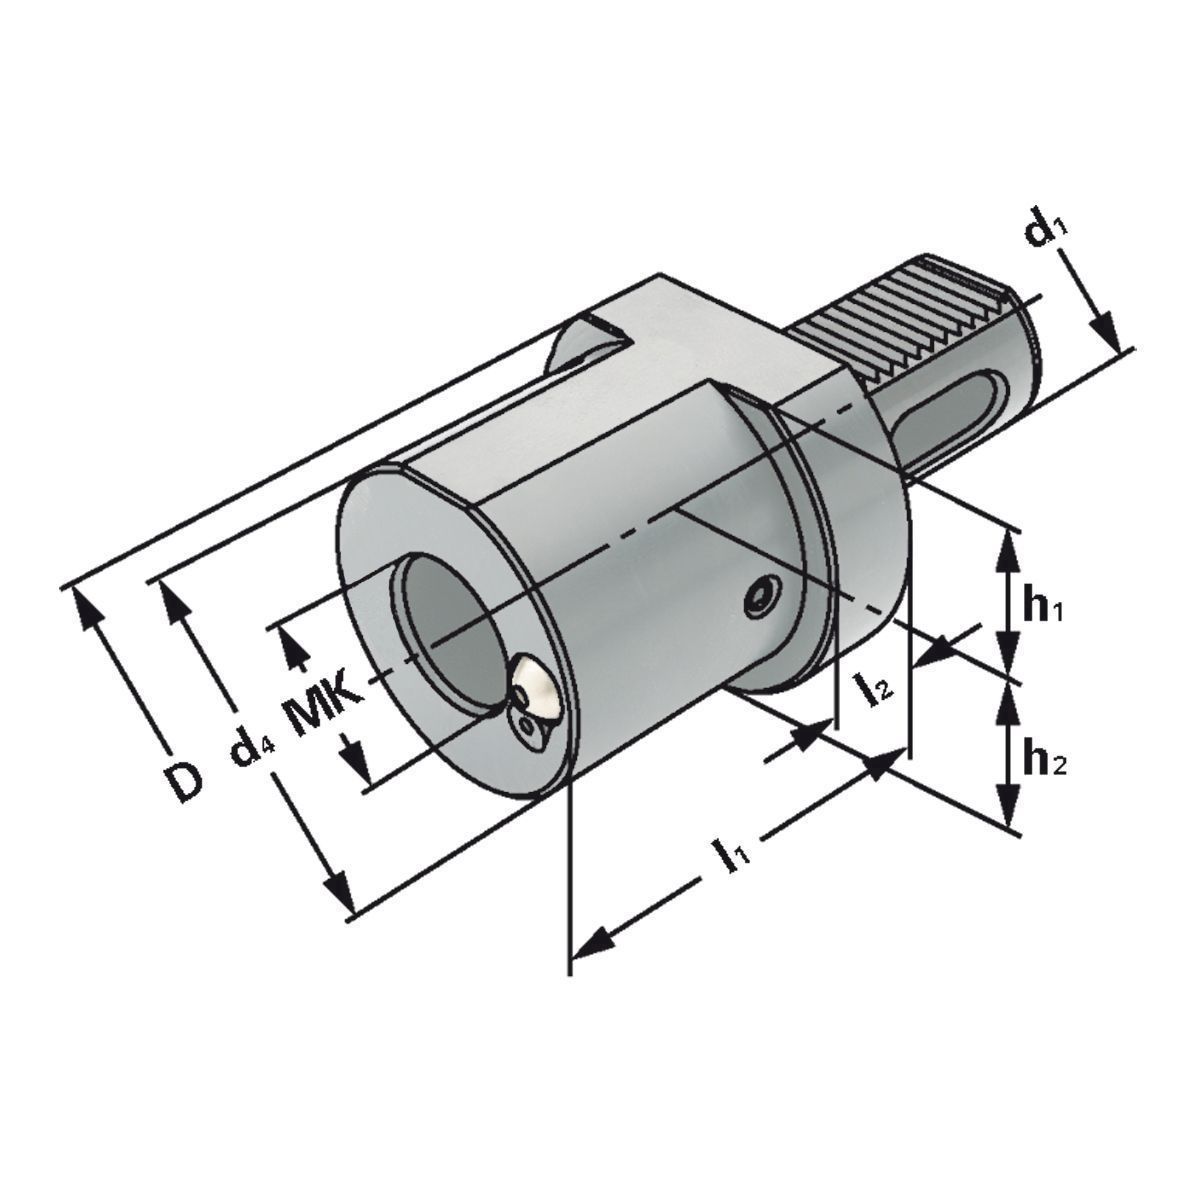 MK-Bohrerhalter F1-50xMK3 DIN 69880 (ISO 10889)